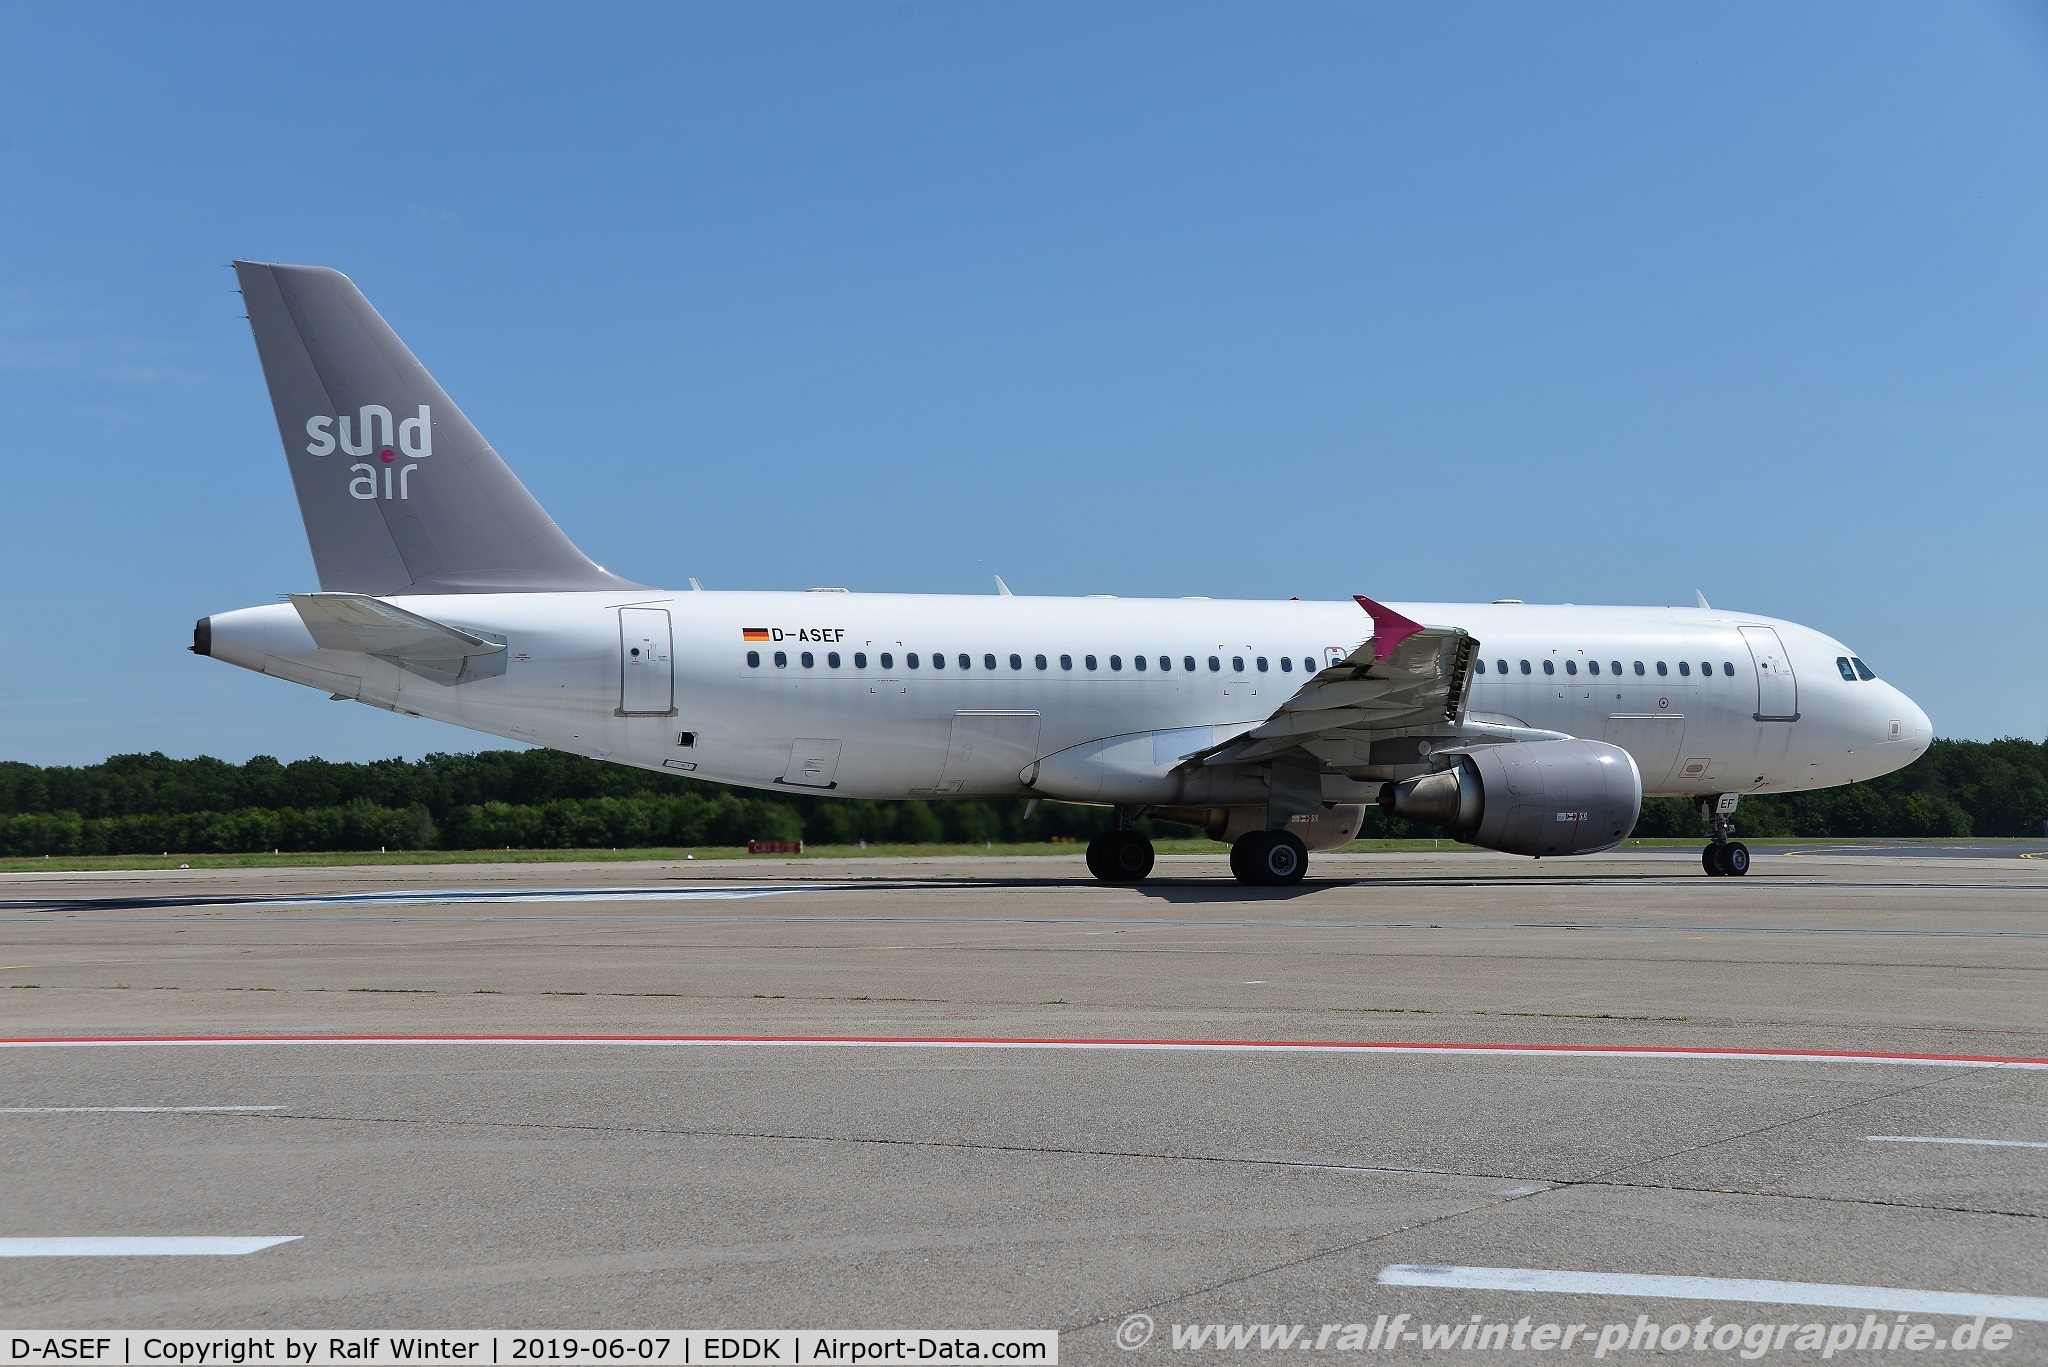 D-ASEF, 2011 Airbus A320-214 C/N 4974, Airbus A320-214 - SR SDR Sundair - 4974 - D-ASEF - 07.06.2019 - CGN